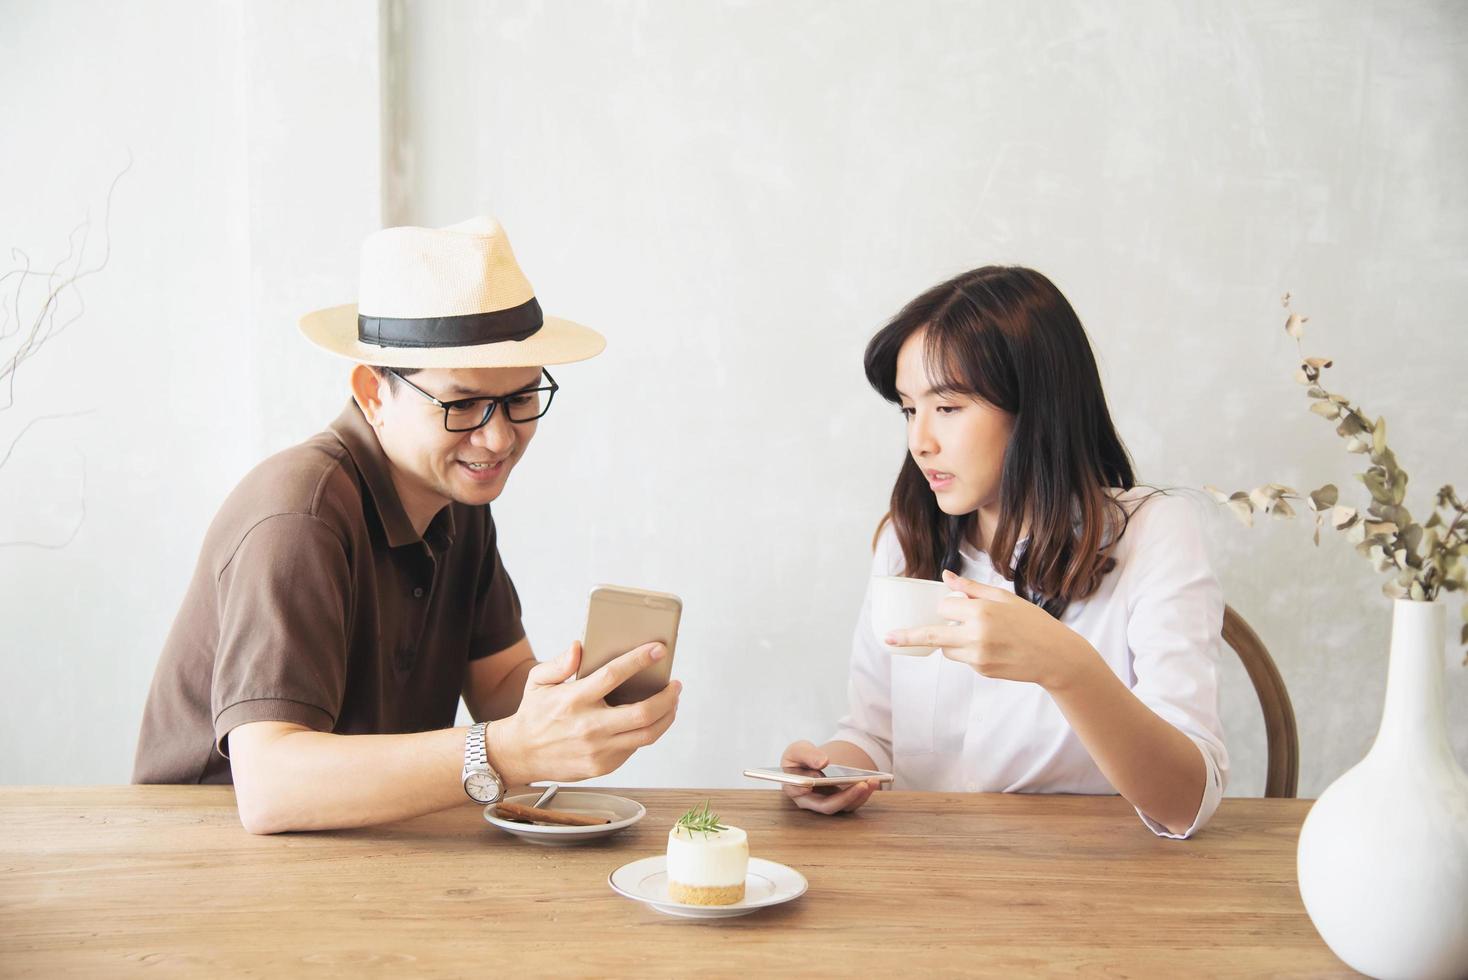 homme et femme décontractés parlant joyeusement tout en buvant du café et en regardant un téléphone portable - mode de vie heureux dans un café photo